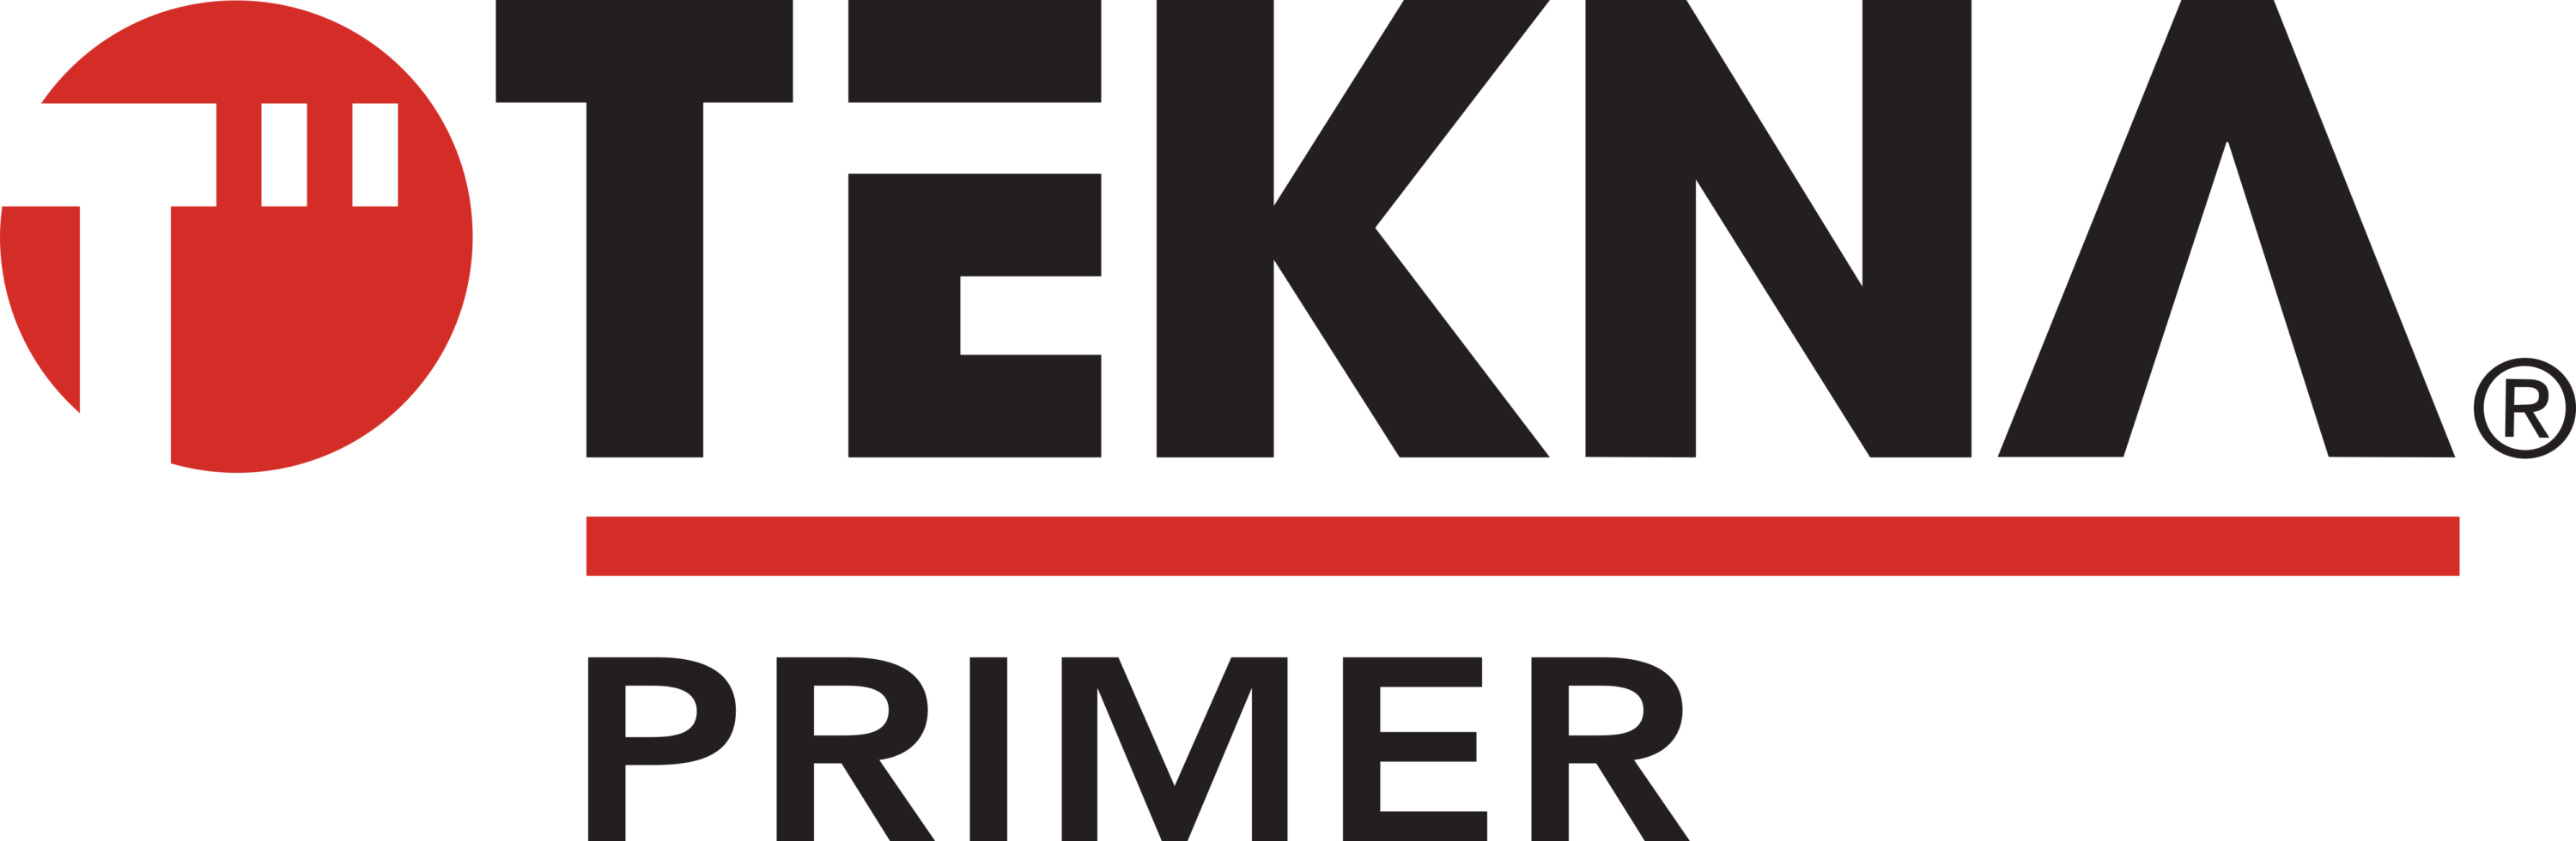 TEKNA Primer Logo